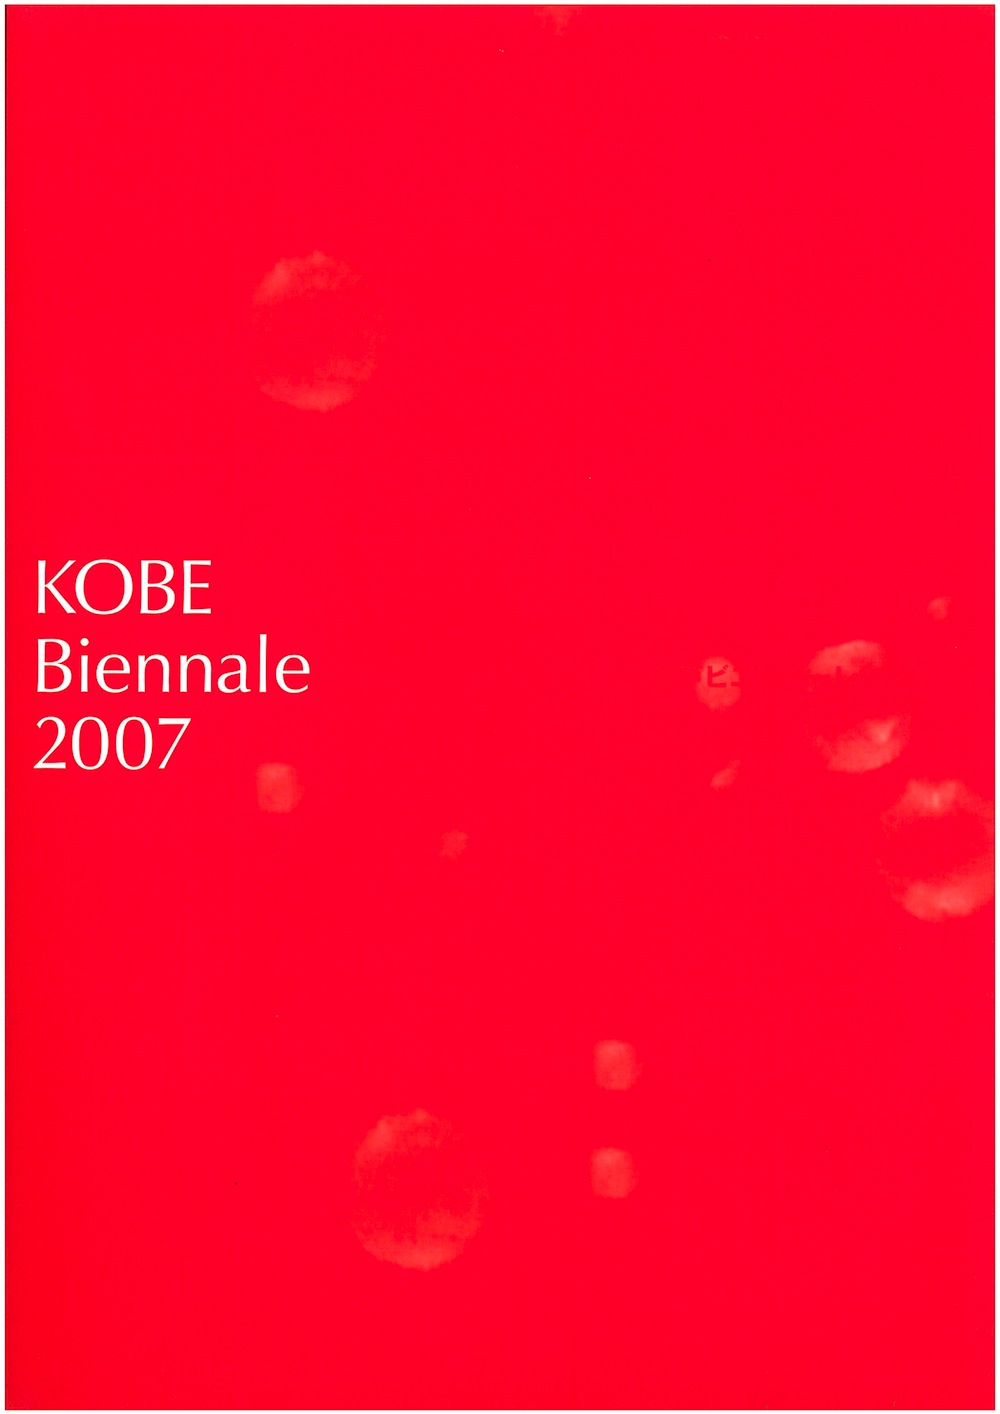 KOBE Biennale 2007